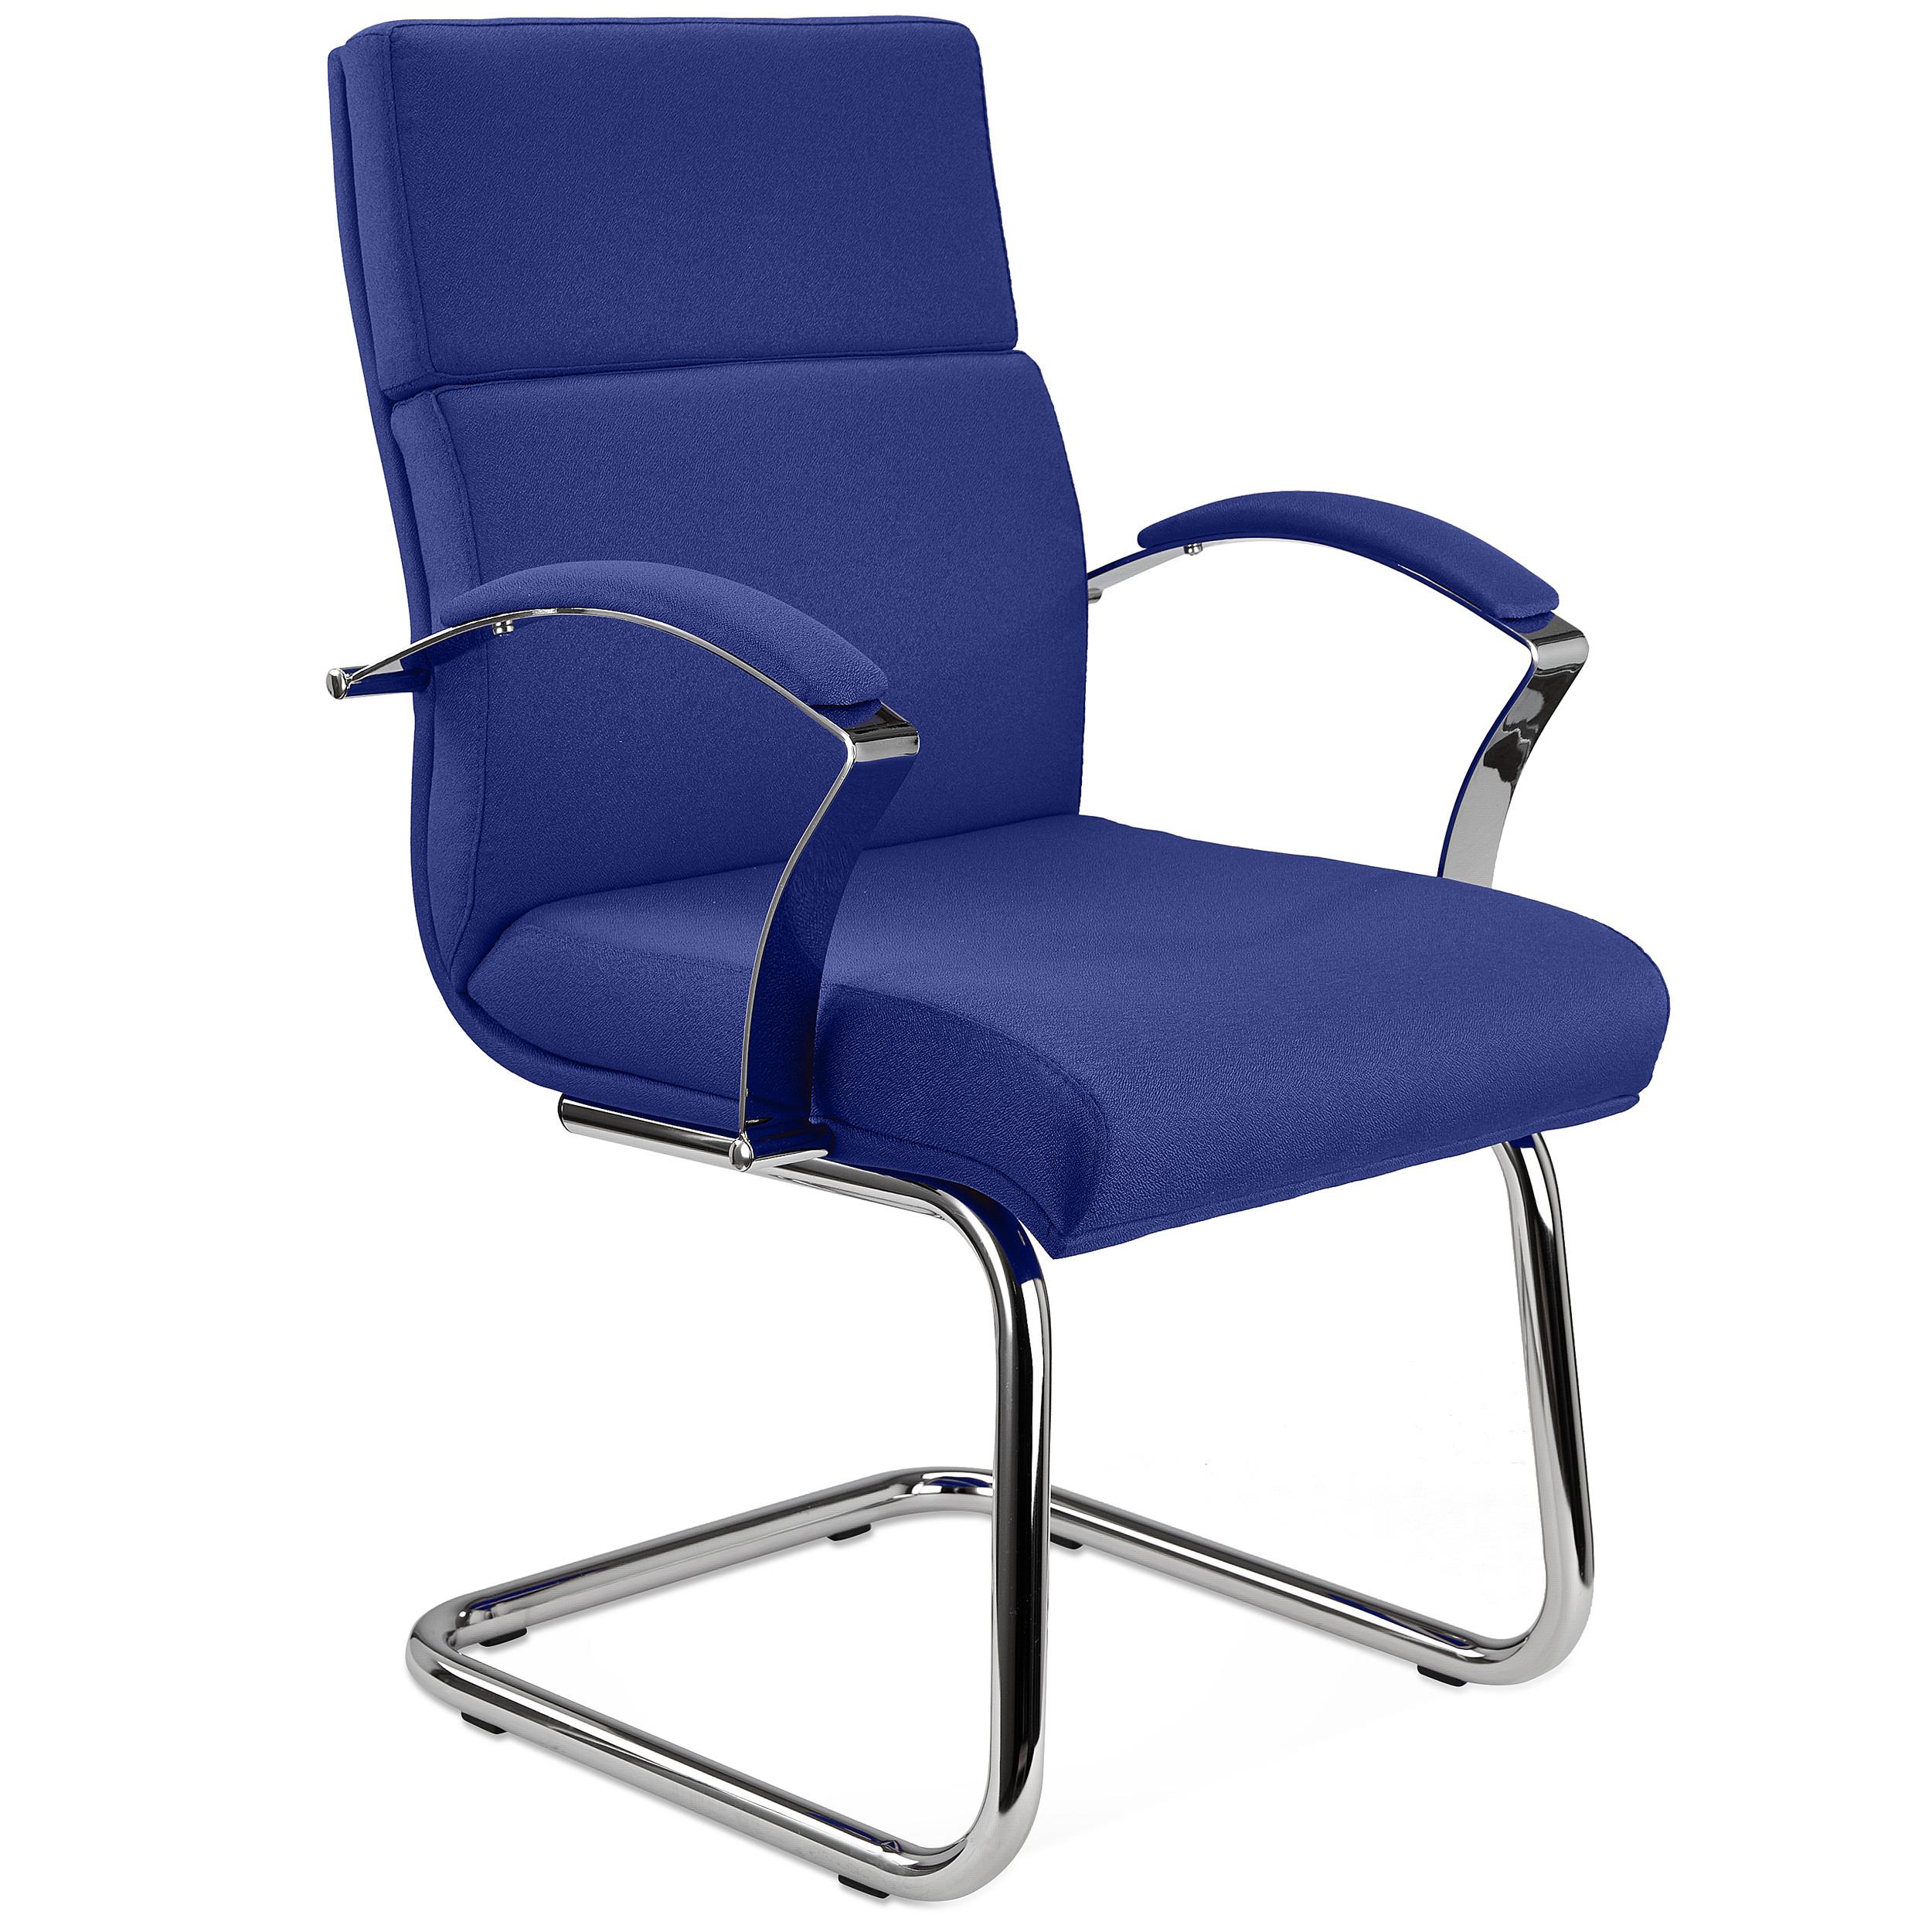 Chaise visiteur RABAT TISSU, Grande Qualité et Design, couleur Bleu Foncé